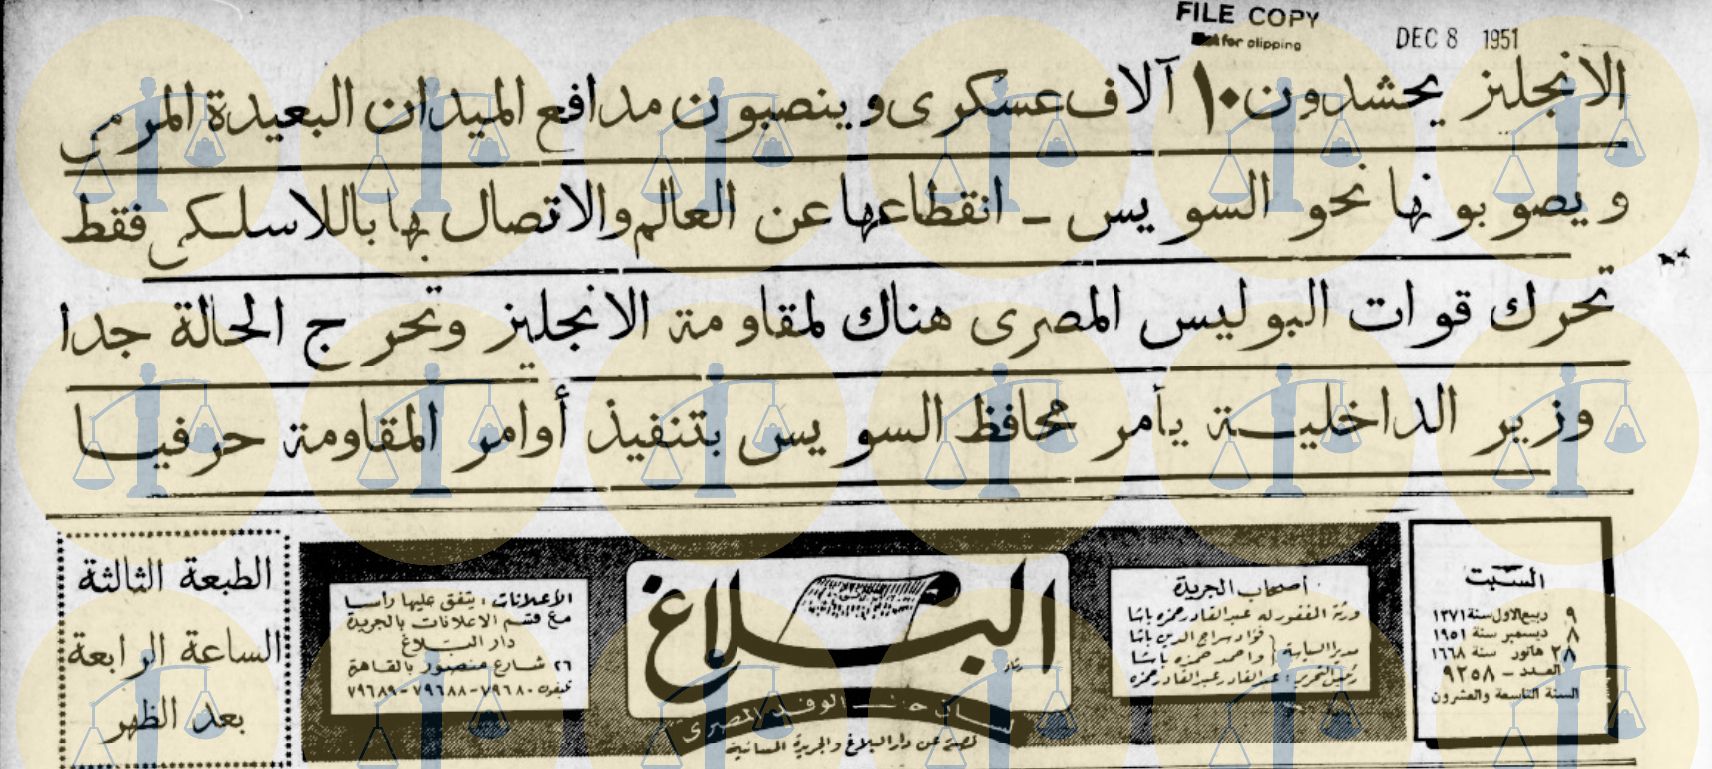 جريدة البلاغ الوفدية عدد 8 ديسمبر 1951 ورصد لحال السويس قبل يوم من إزالة كفر عبده